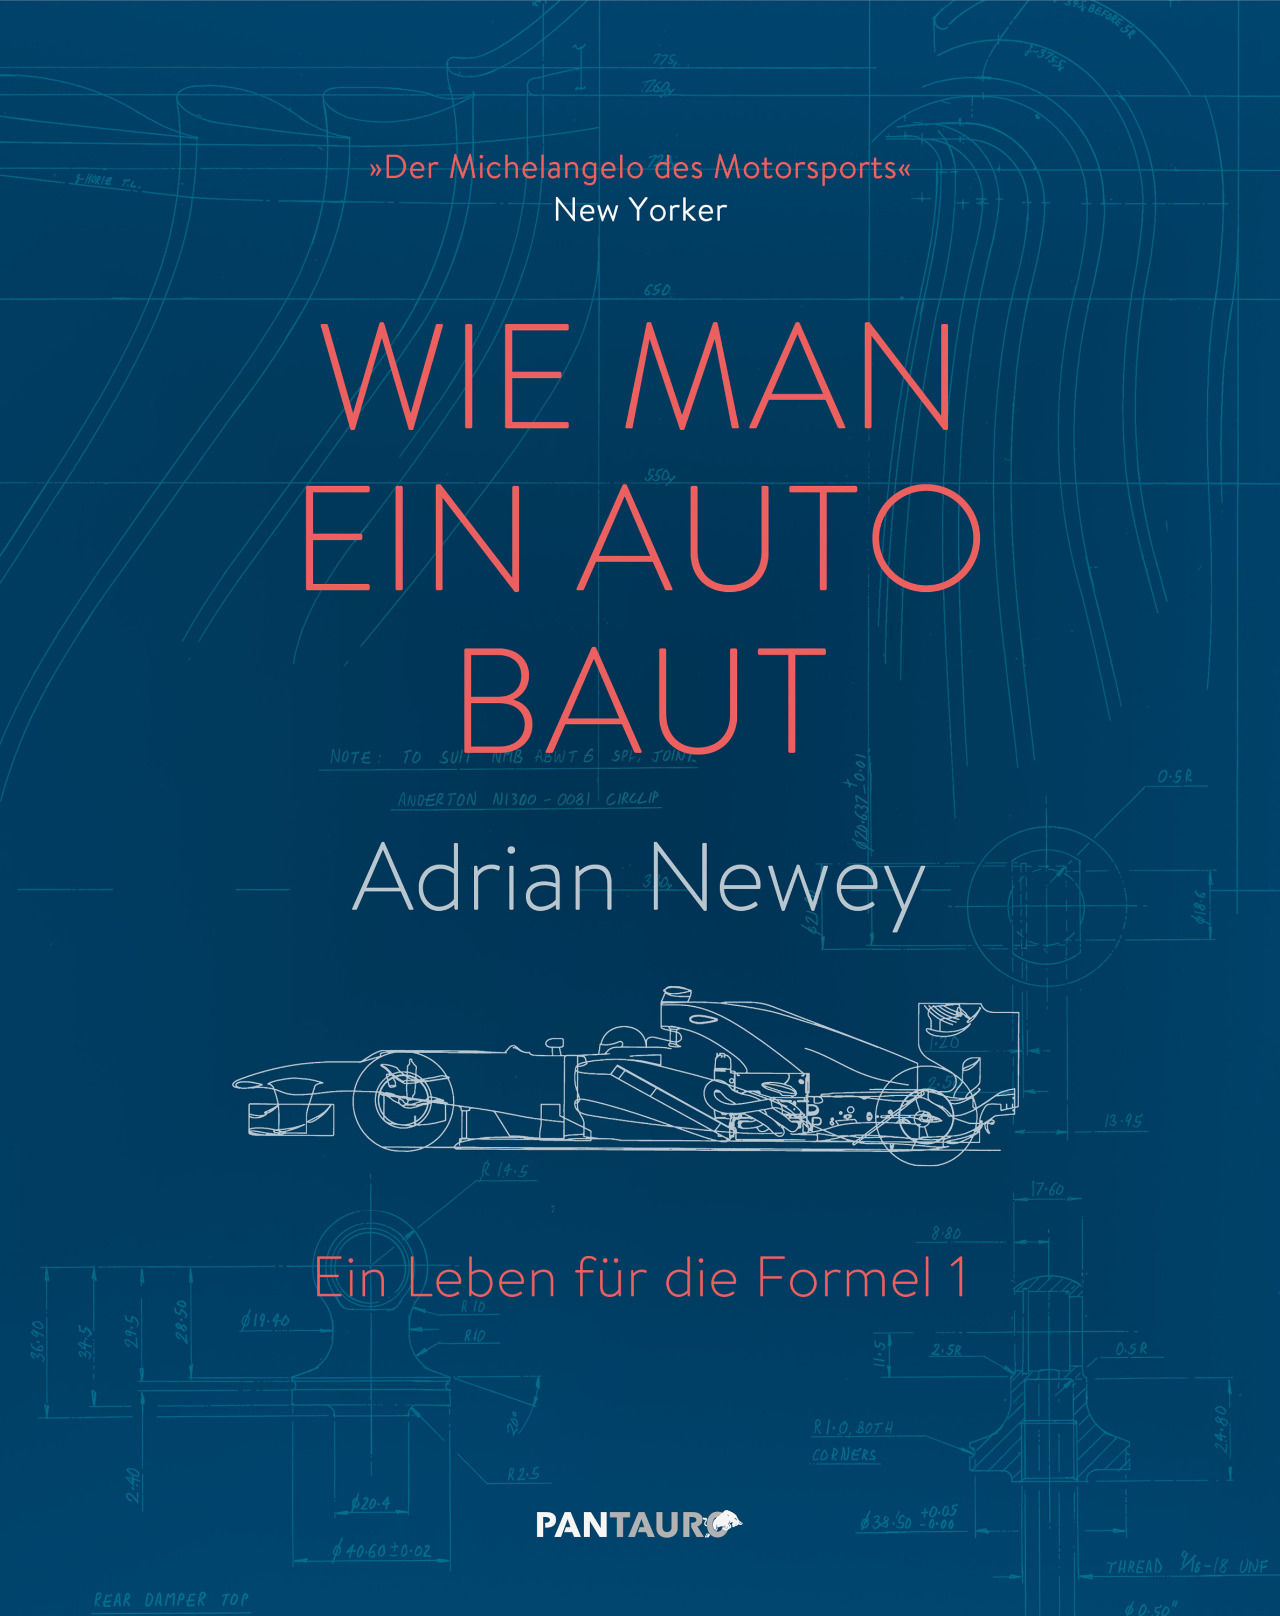 WIE MAN EIN AUTO BAUT - EIN LEBEN FÜR DIE FORMEL 1. Das Buch von Adrian Newey ist im Pantauro-Verlag erschienen. Auf aufregende und anregende Weise erzählt Newey die Geschichte seiner Autos - und die der Menschen, die sie fuhren. Ein großartiges Standardwerk über die moderne Formel 1, geschrieben mit den Worten des erfolgreichsten Formel-1-Akteurs aller Zeiten. Infos: https://www.pantauro.com/produkt/wie-man-ein-auto-baut-2/